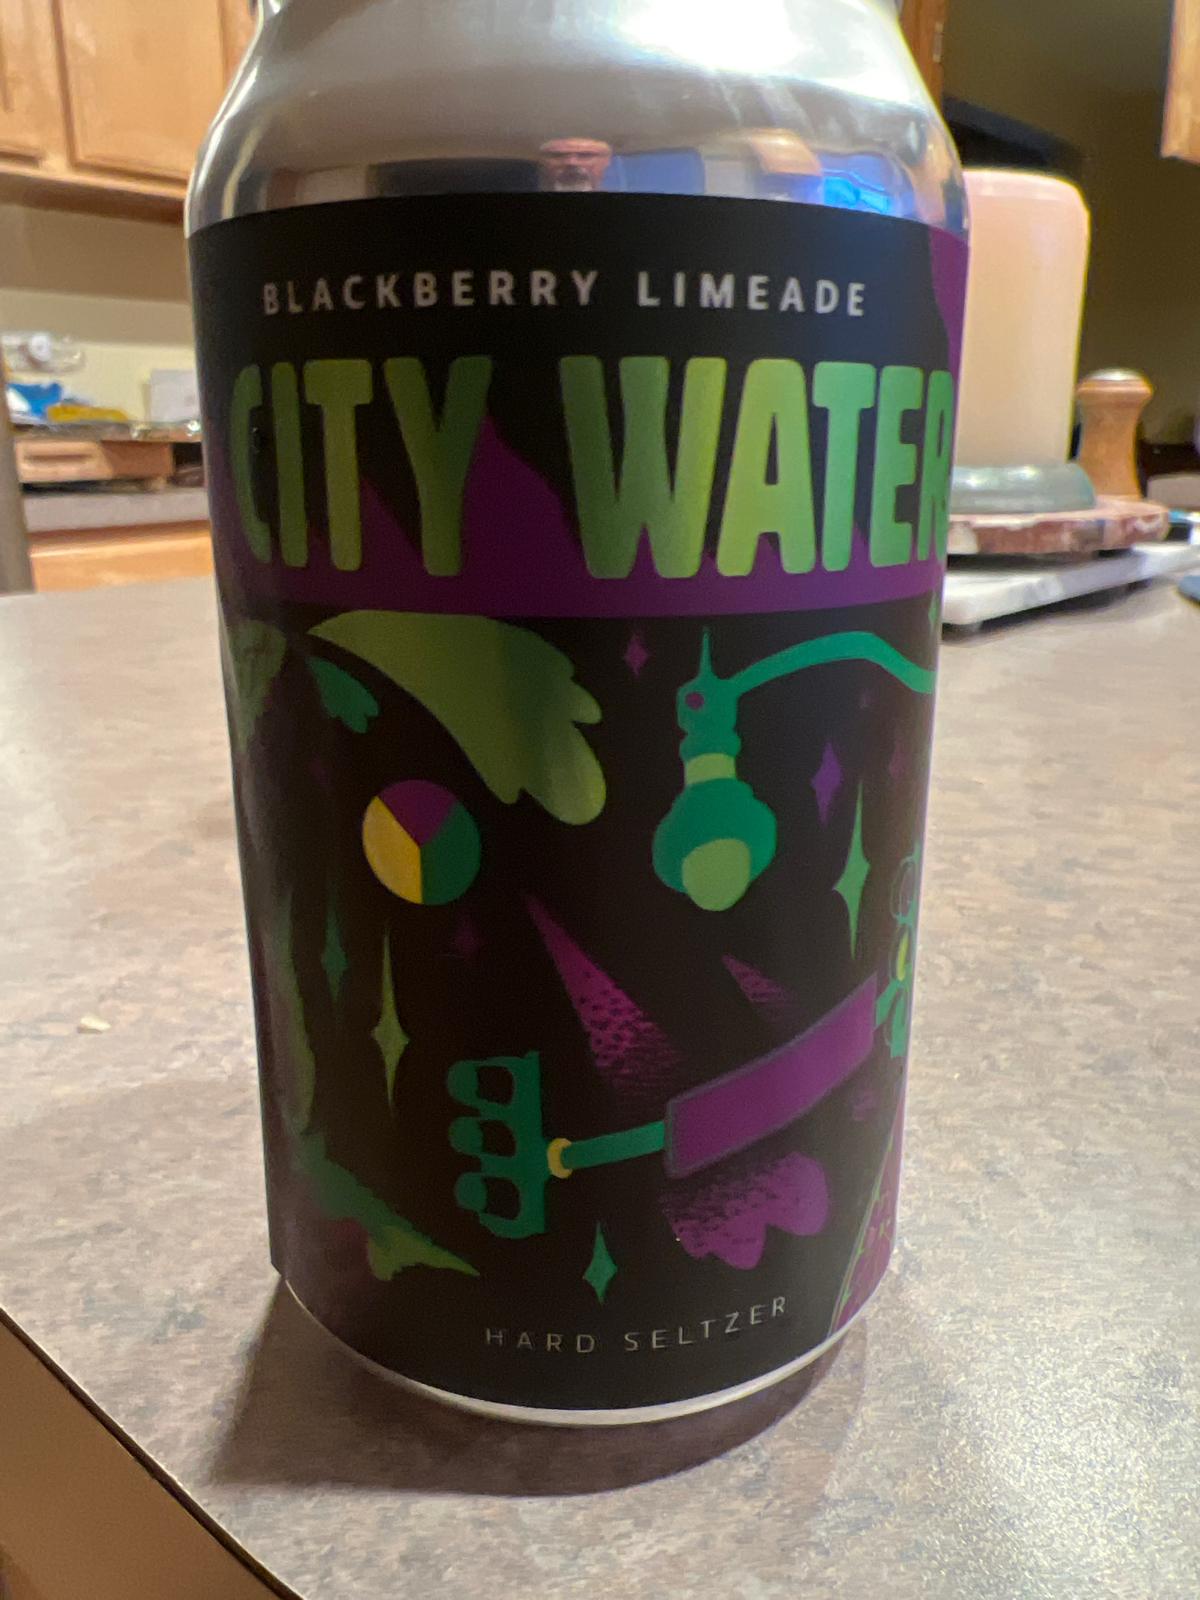 City Water Blackberry Limeade